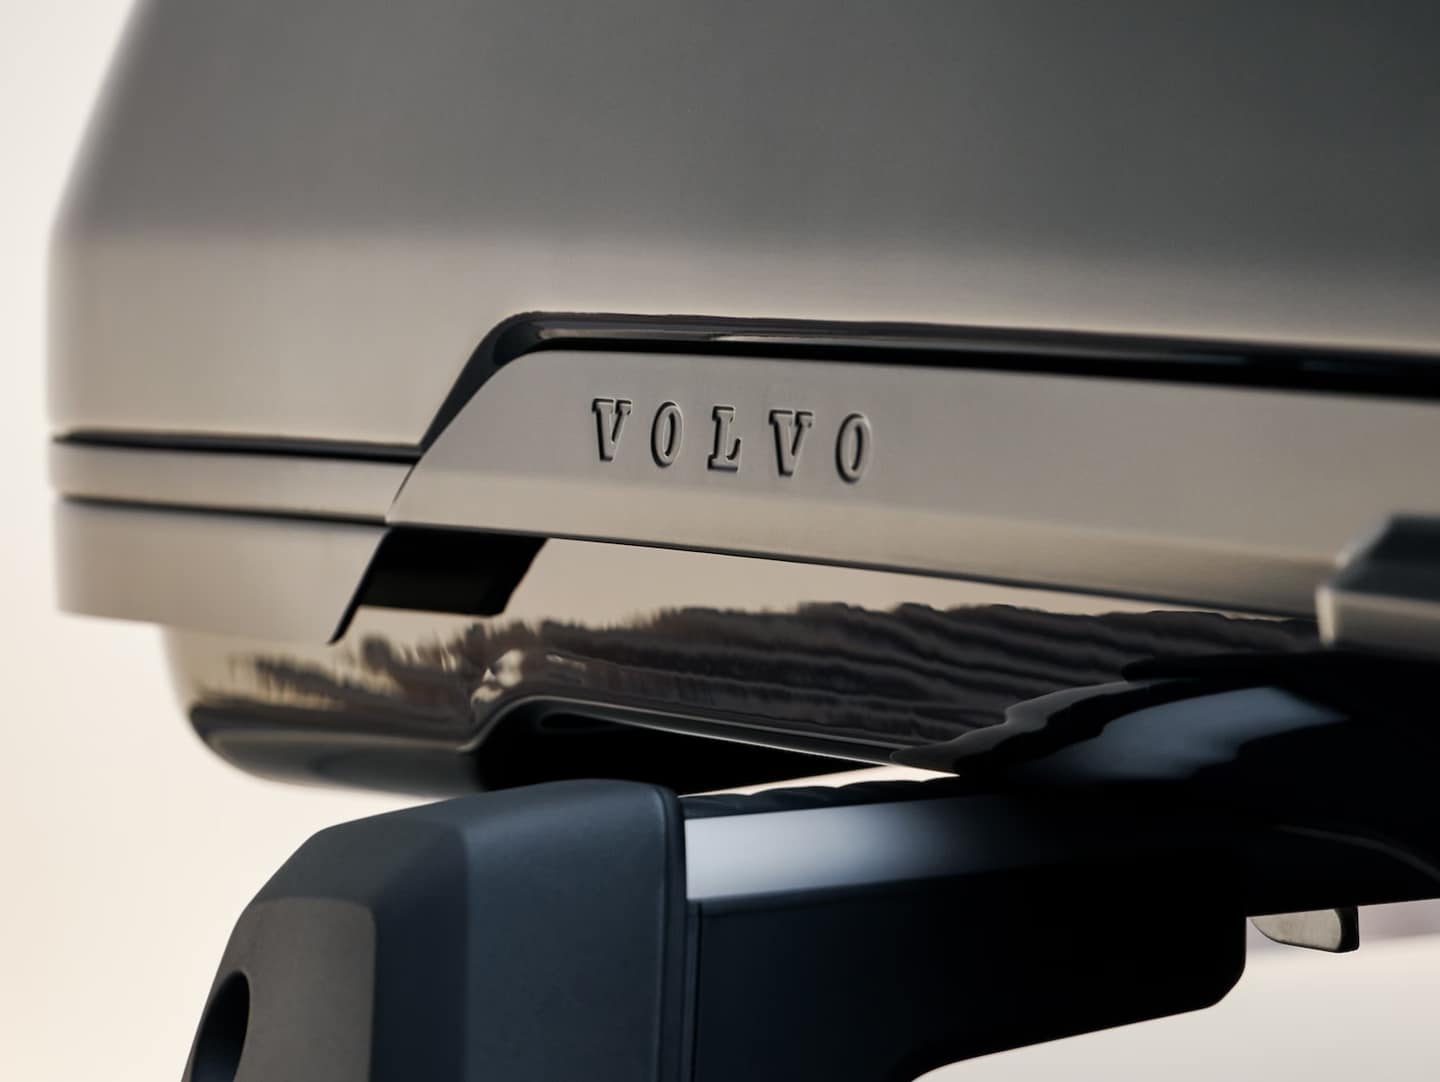 Optimiza la carga con el nuevo baúl de techo de Volvo Cars más sustentable.